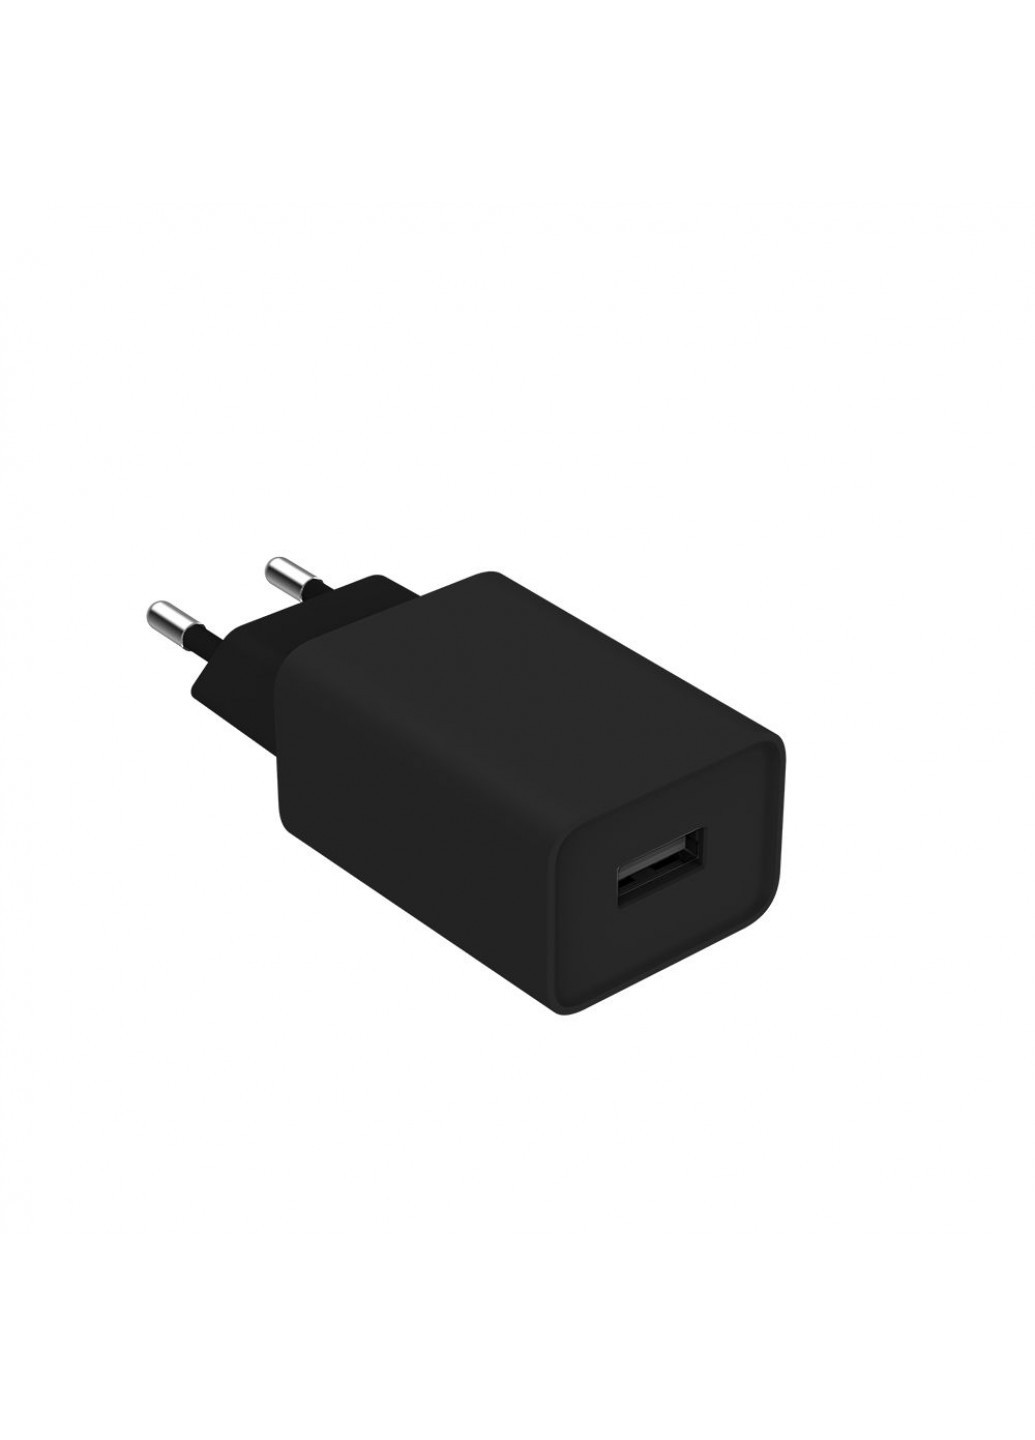 Мережевий зарядний пристрій 1USB Quick Charge 3.0 (18W) Black + cable Lightning () Colorway cw-chs013qcl-bk (257717710)